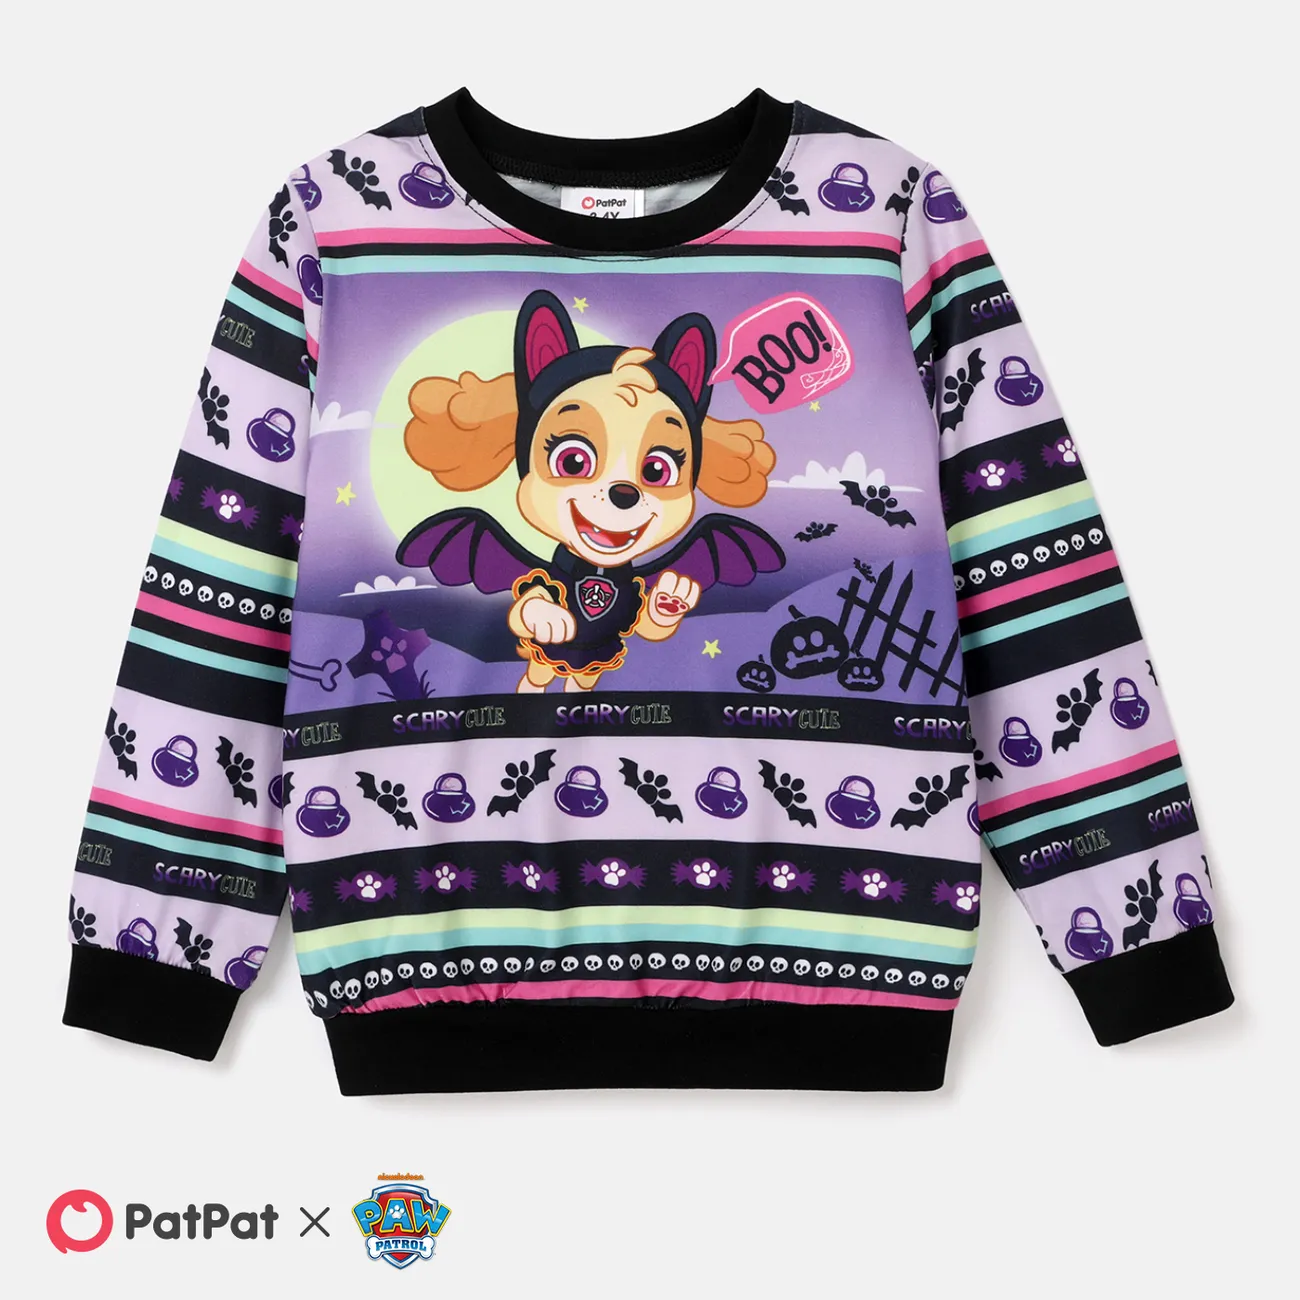 PAW Patrol Halloween Toddler Boys/Girls Fun Graphic Crew Neck Sweatshirt   big image 1